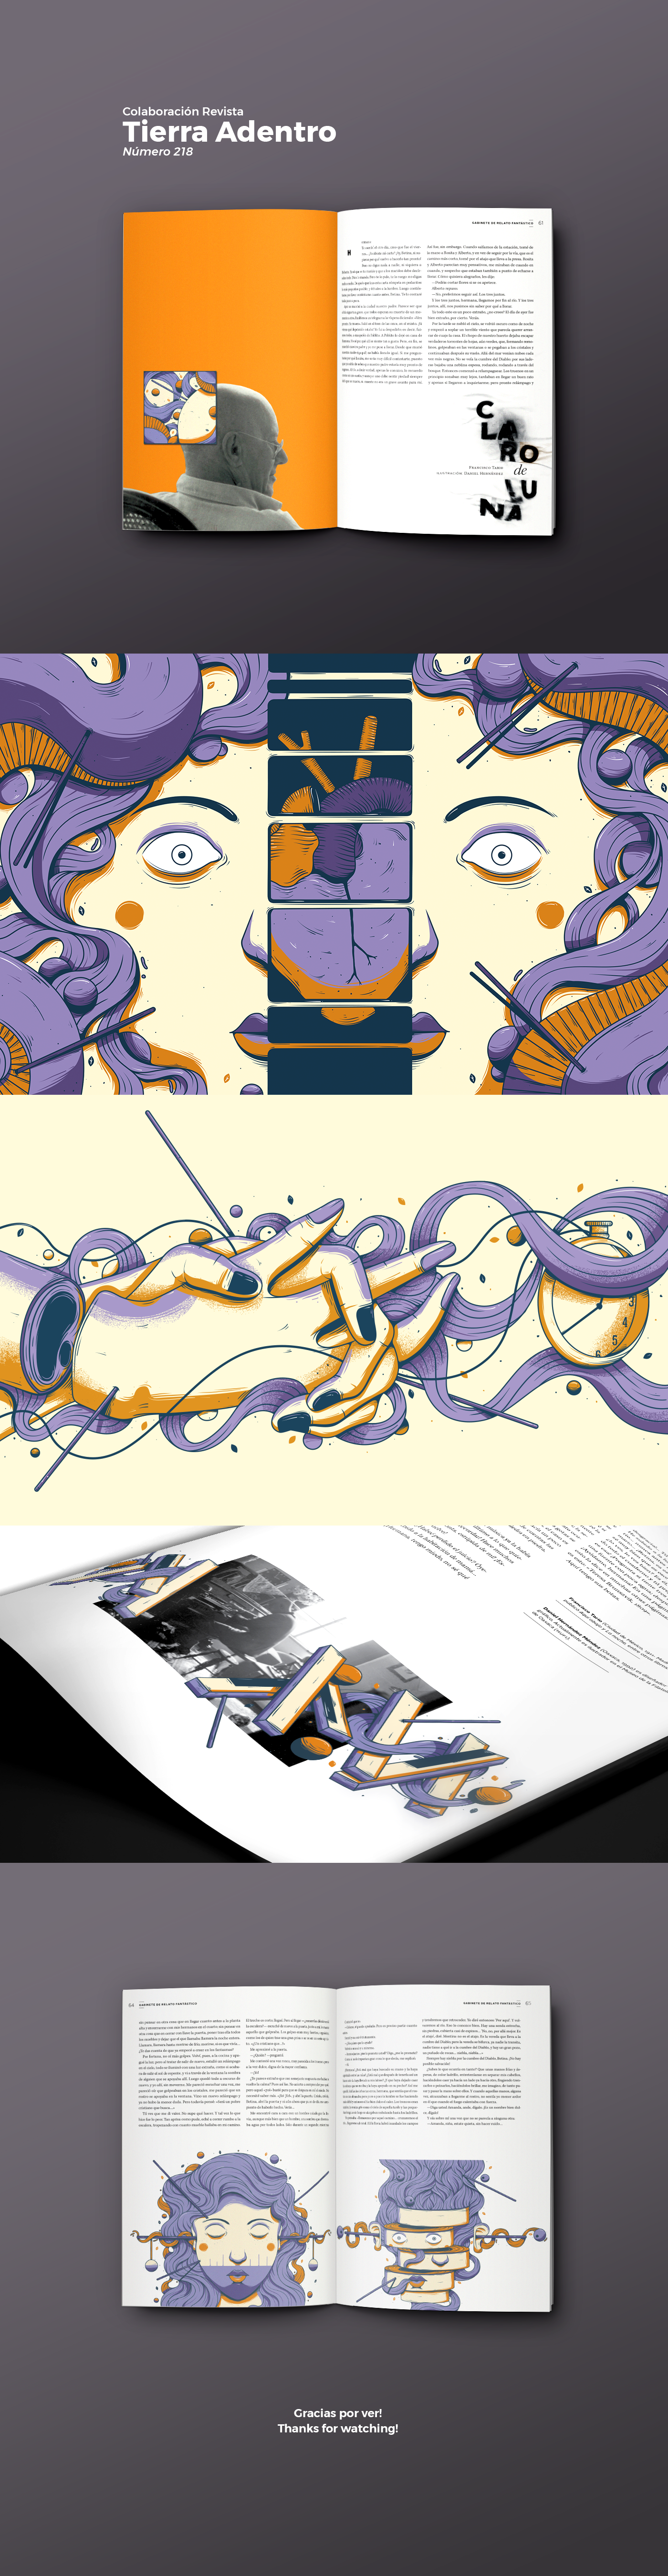 Tario ilustracion vector cuento revista girls tierra adentro magazine diseño artedigital